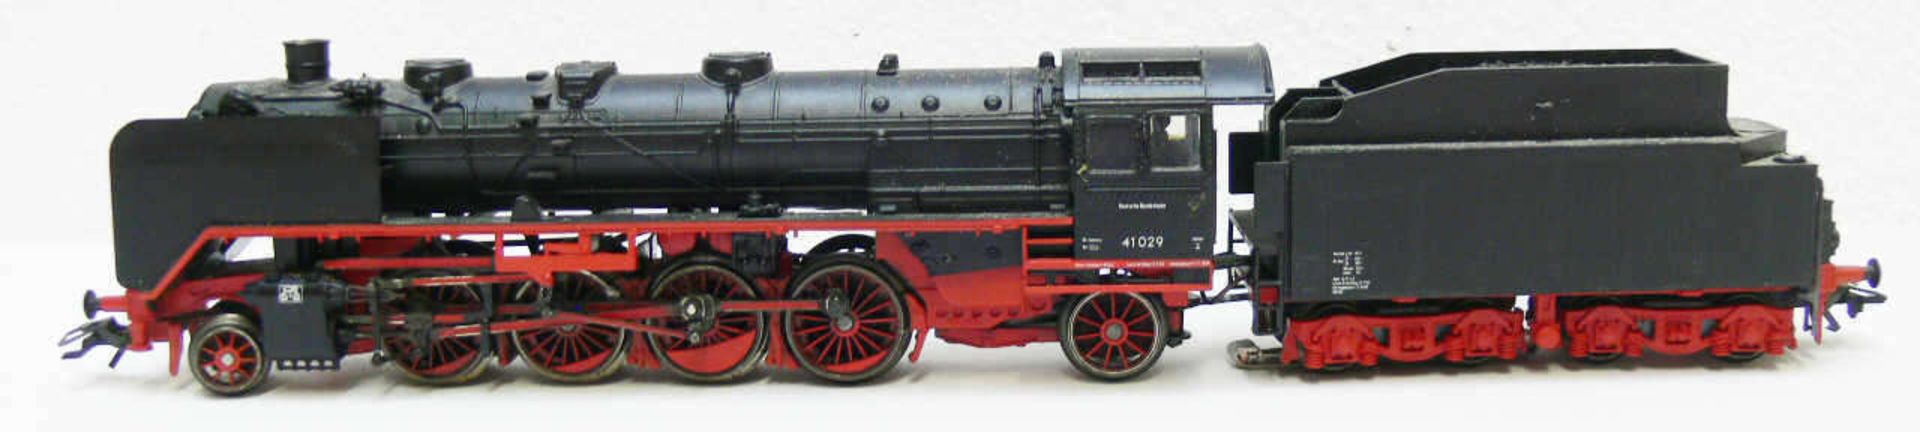 Märklin Dampflokomotive mit Schlepptender BR 41 der DR. BN 41 029. Fahrwerk gealtert. Ohne OVP.